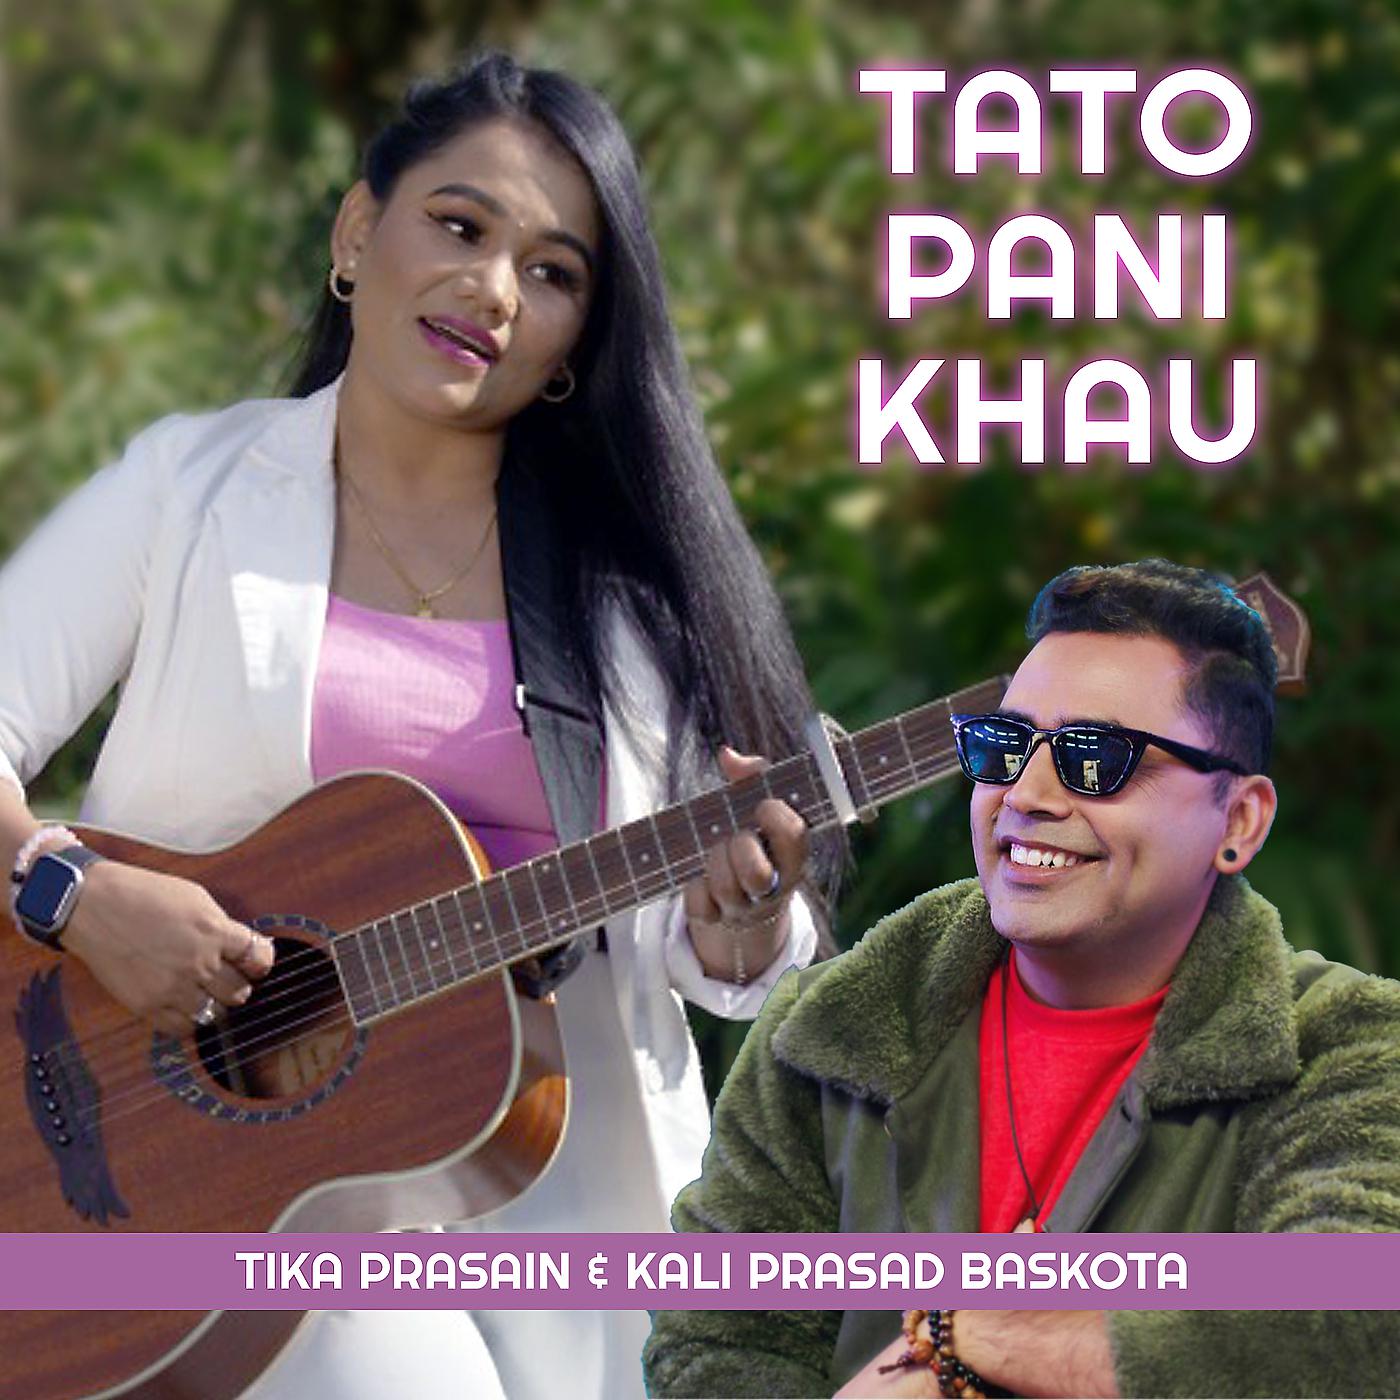 Постер альбома Tato Pani Khau